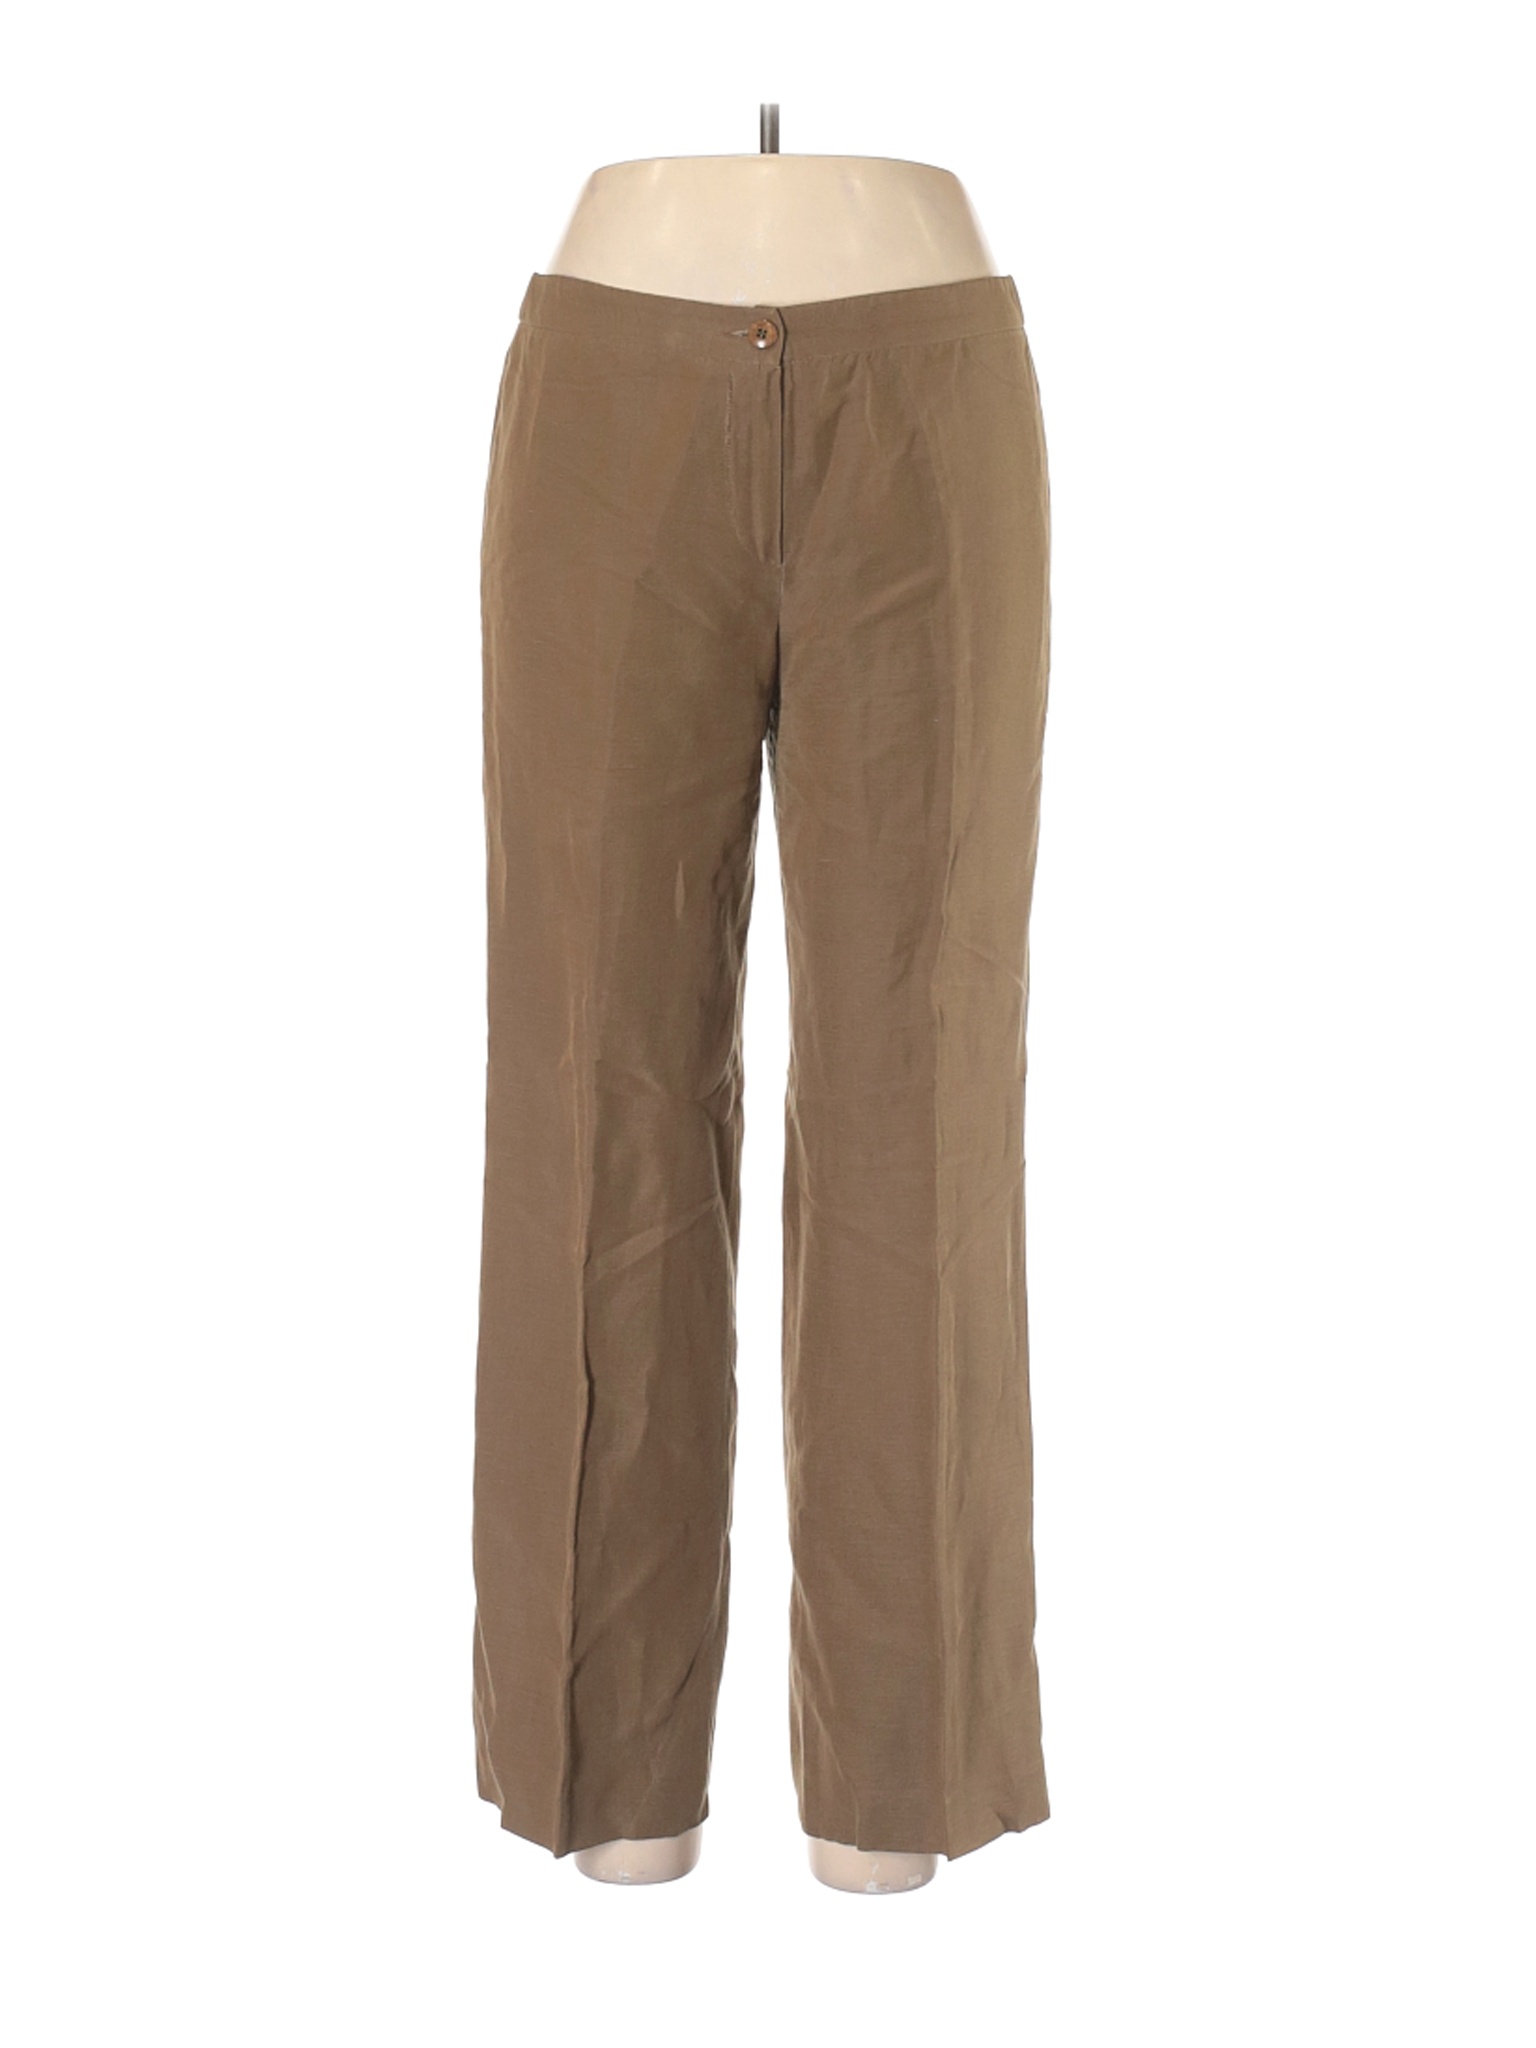 Armani Collezioni Women Brown Linen Pants 10 | eBay